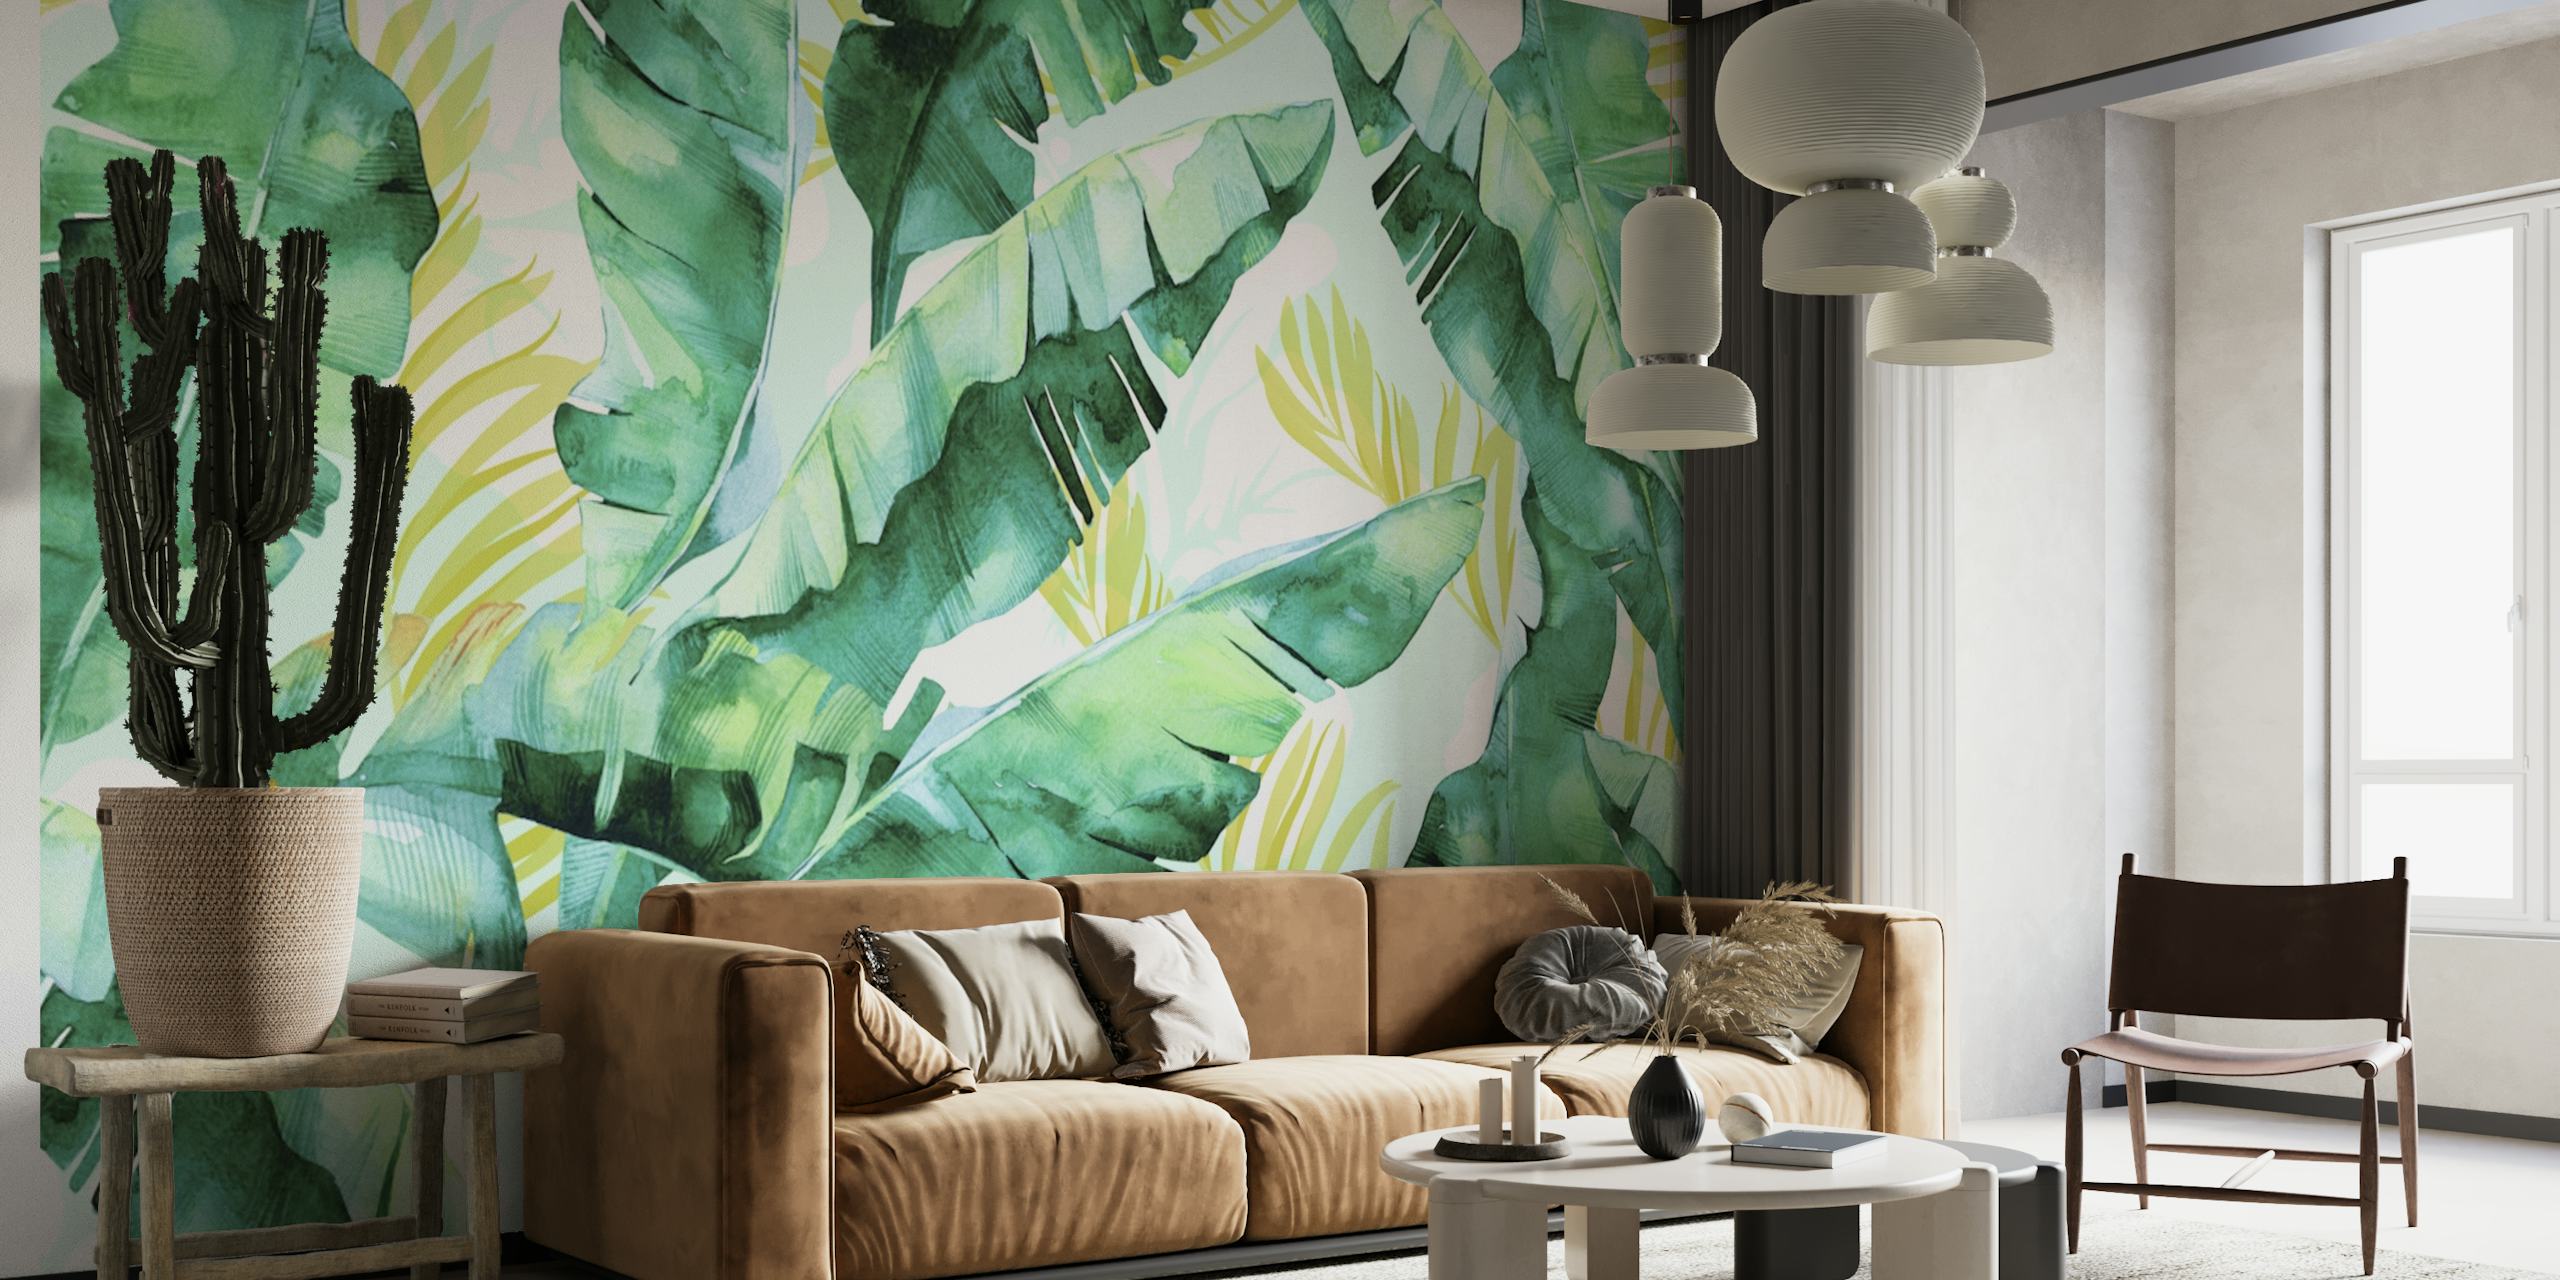 Elegant akvarel bananblad vægmaleri med grønne toner og guldaccenter